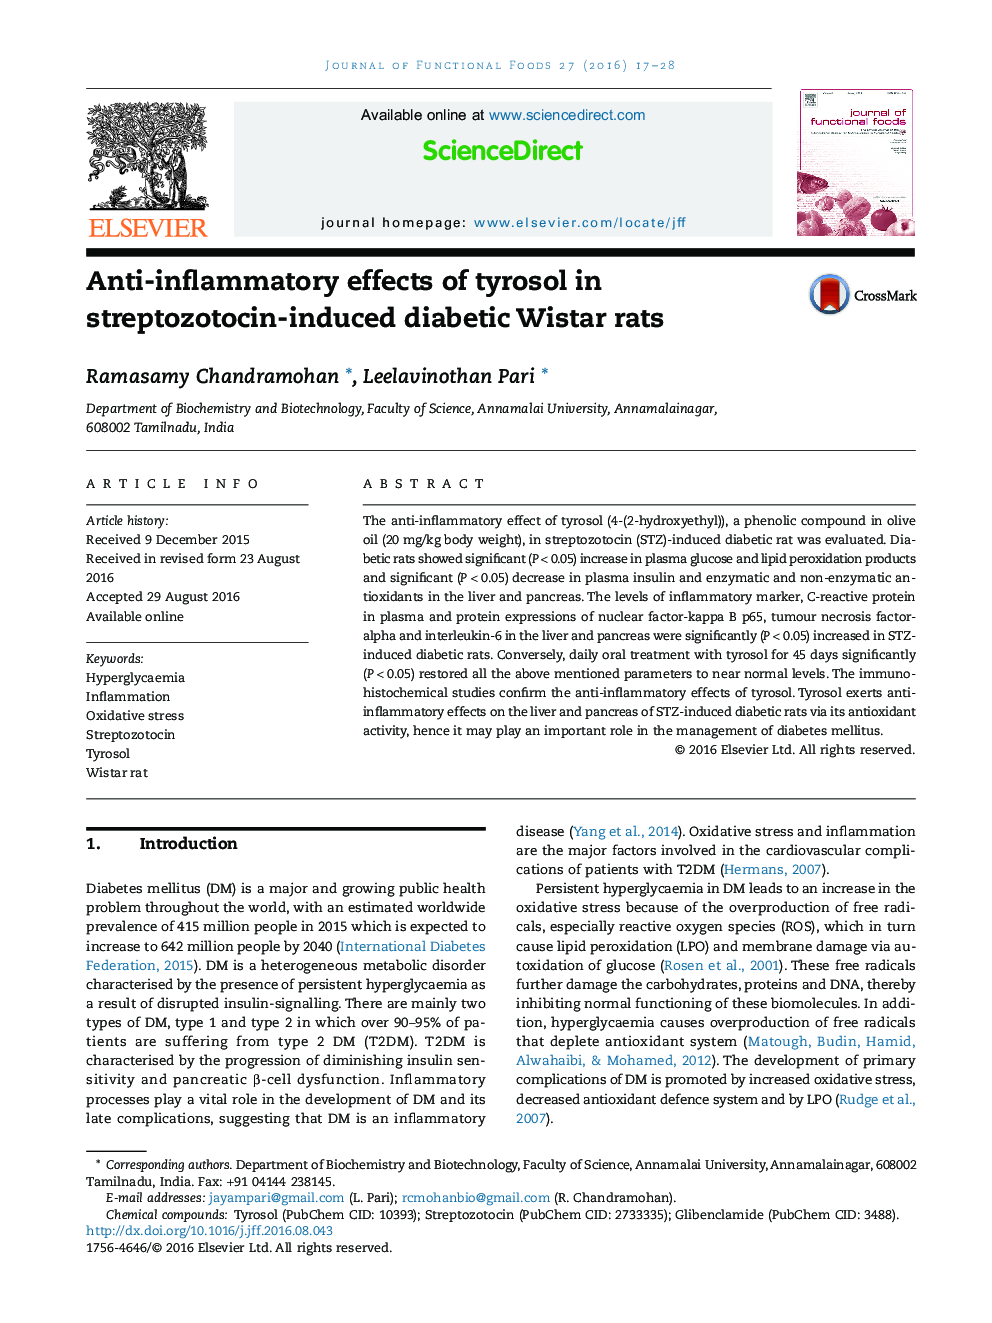 اثرات ضد التهابی تیروسول در موش های صحرایی دیابتی ناشی از استرپتوزوتوسین 